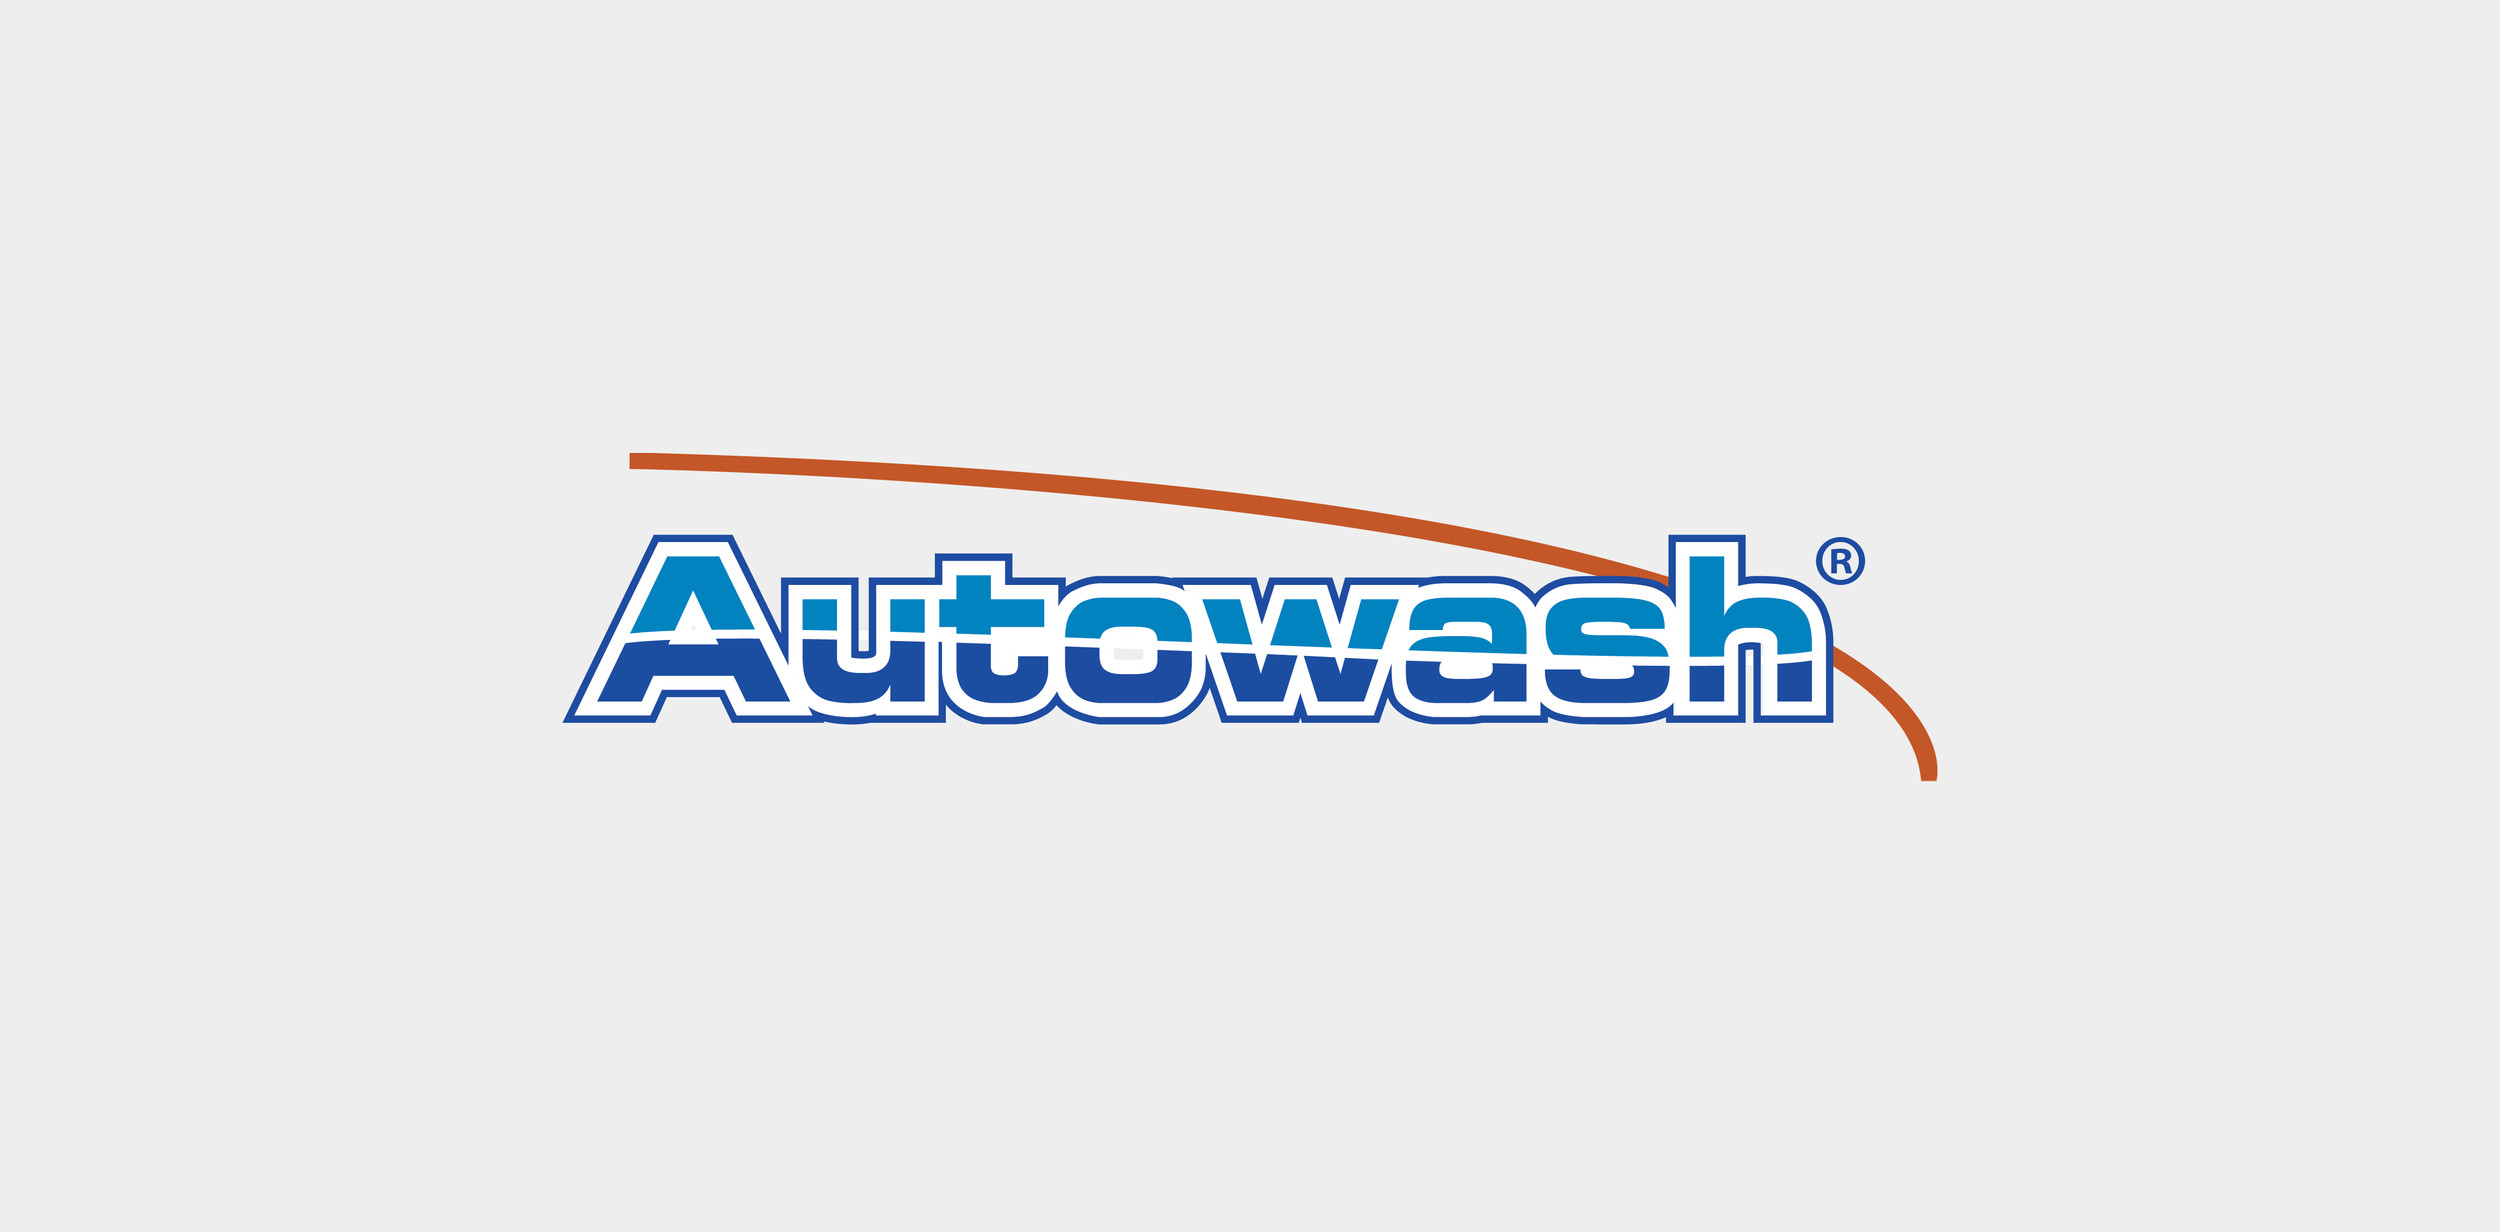 www.autowashco.com